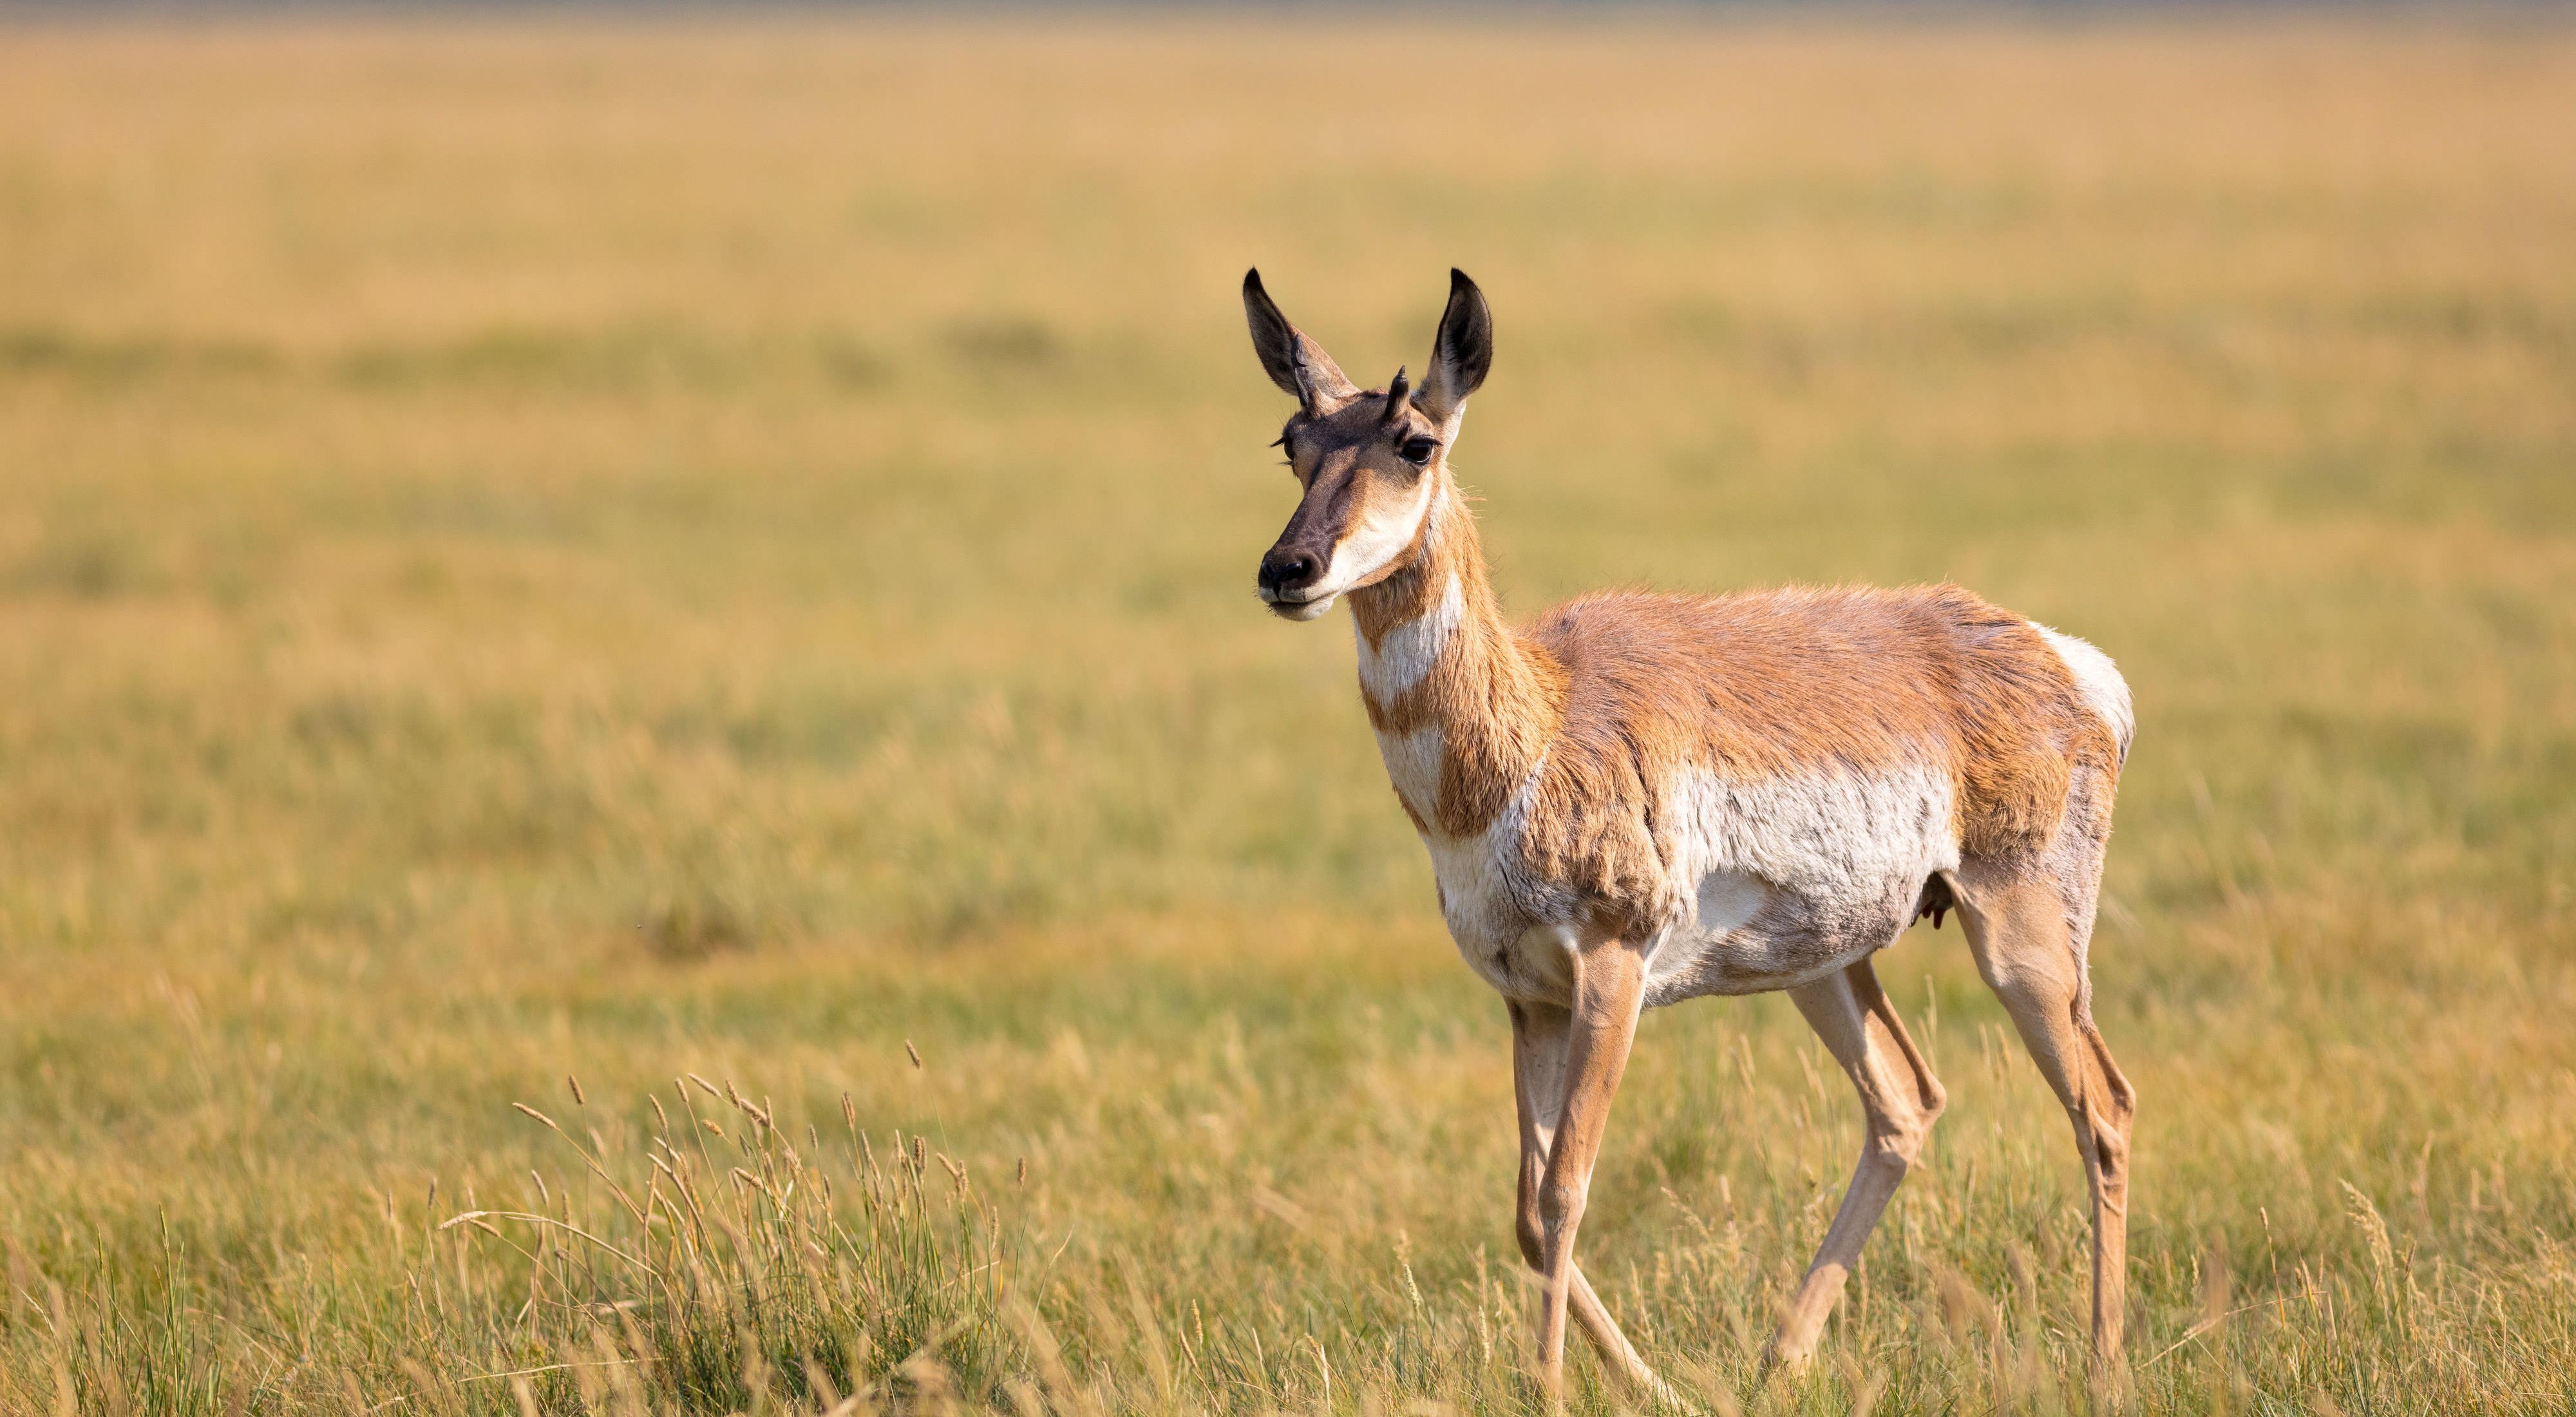 A pronghorn antelope standing in an open grassland.